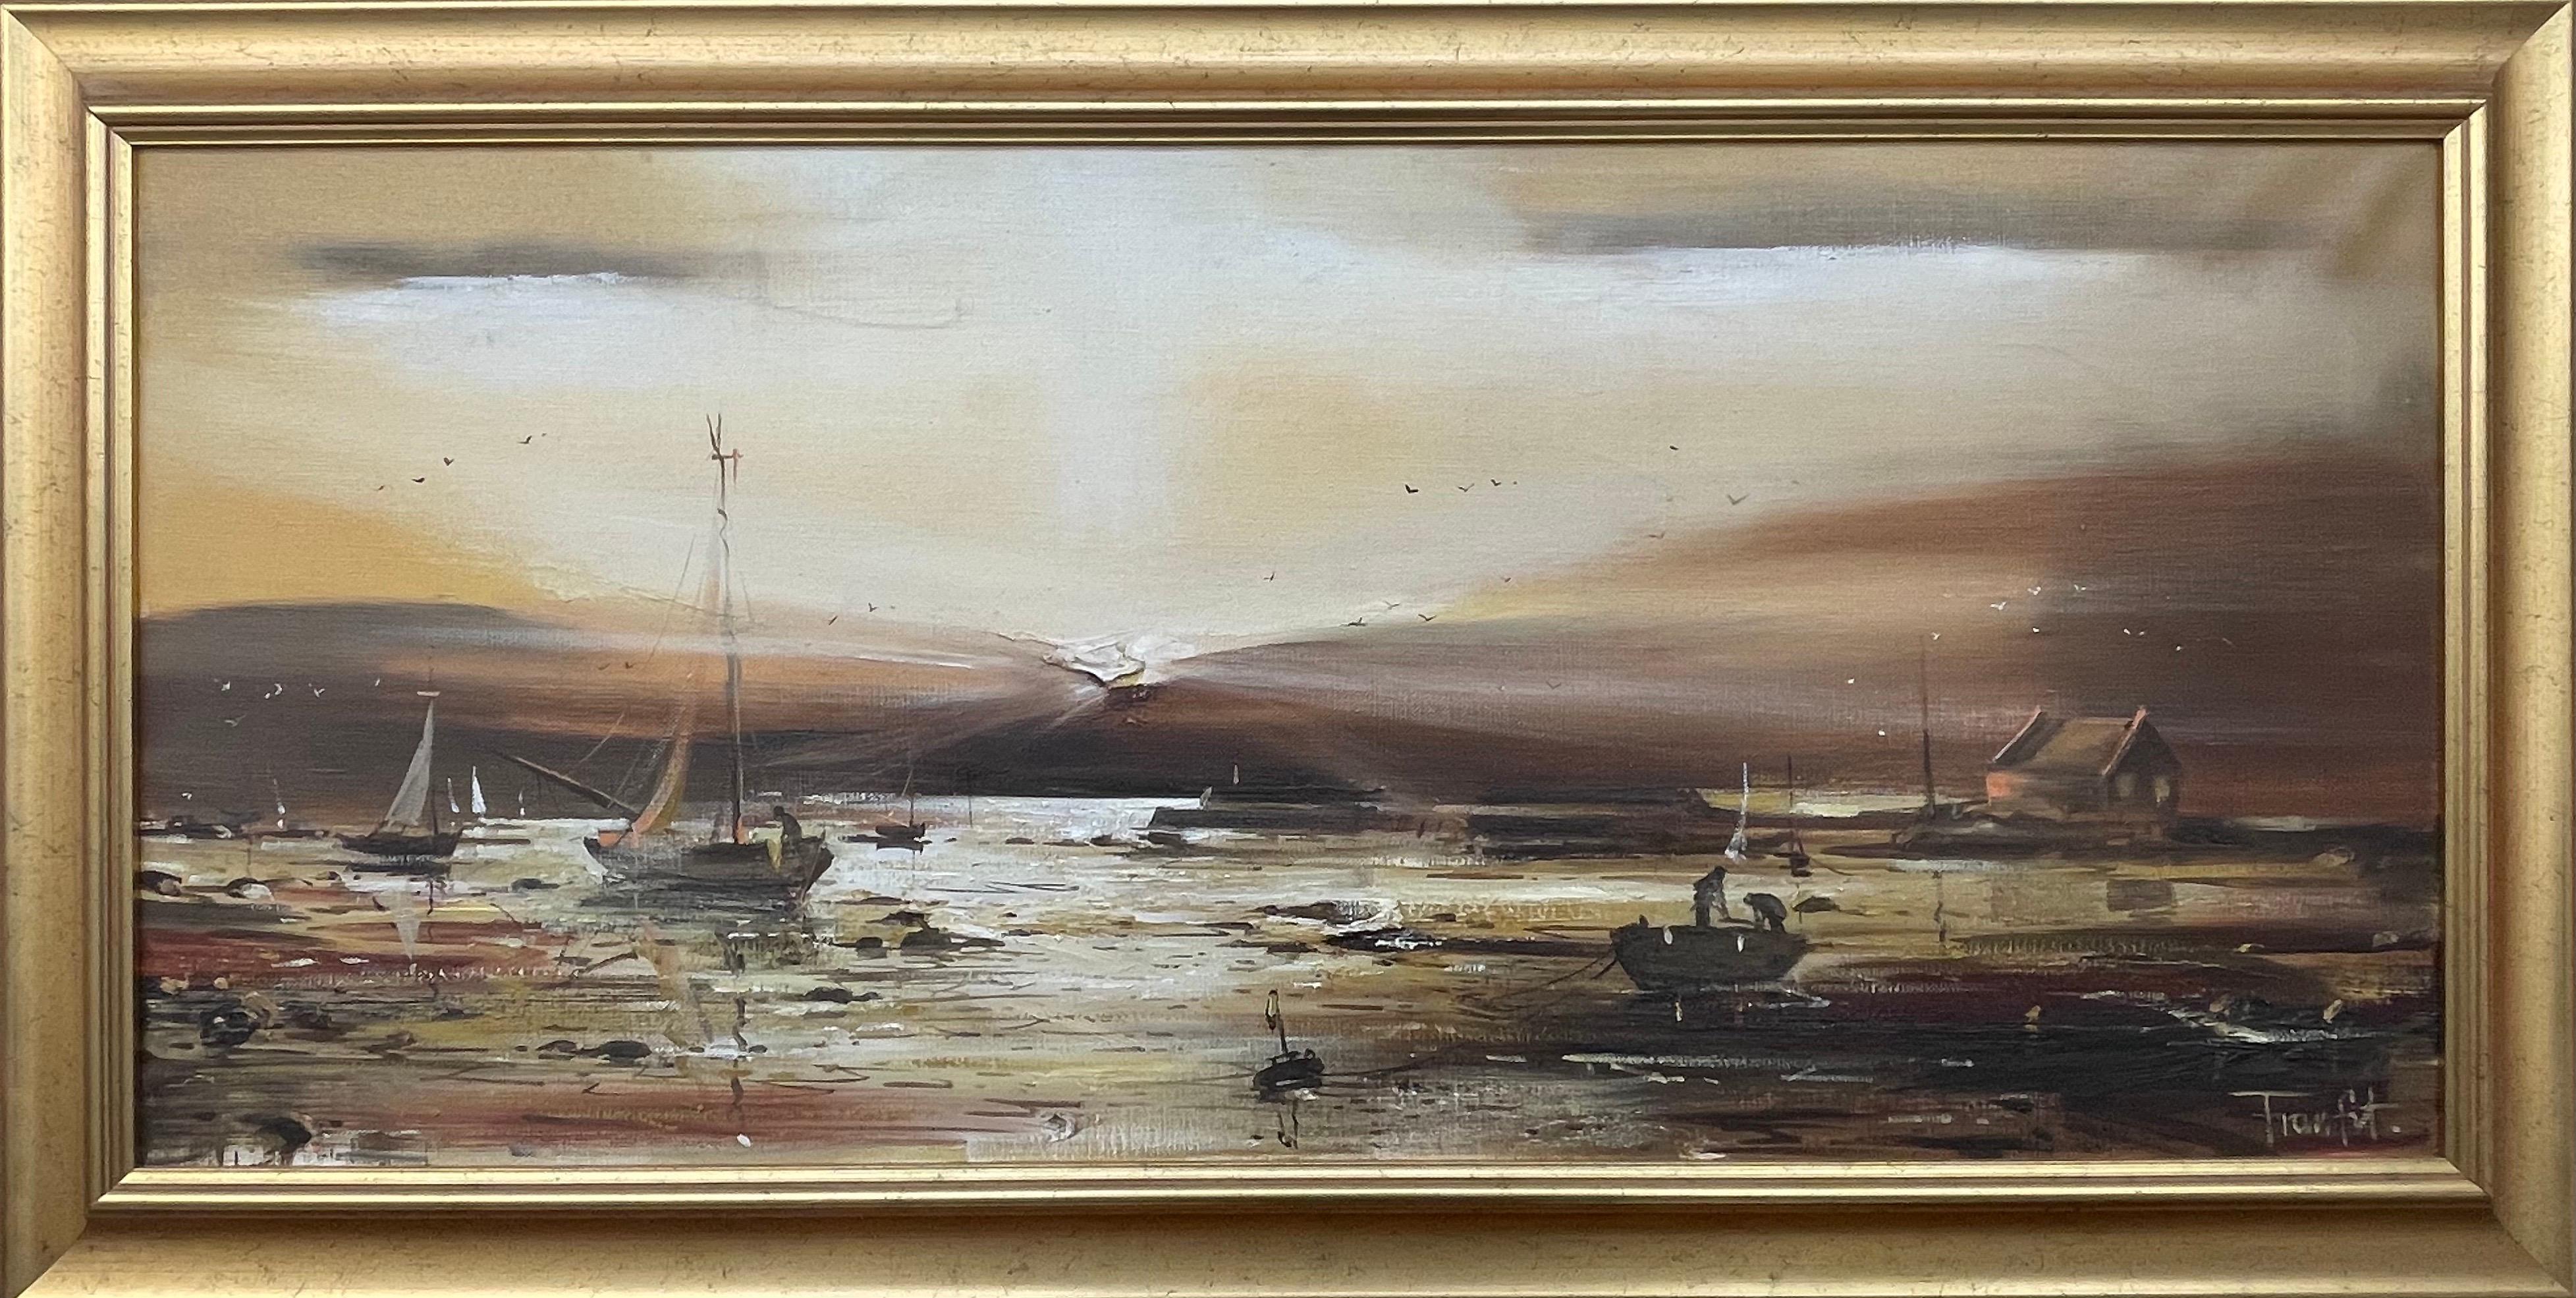 Figurative Painting Frank Fitzsimons - Paysage marin d'Irlande brun doré au crépuscule d'un artiste irlandais contemporain